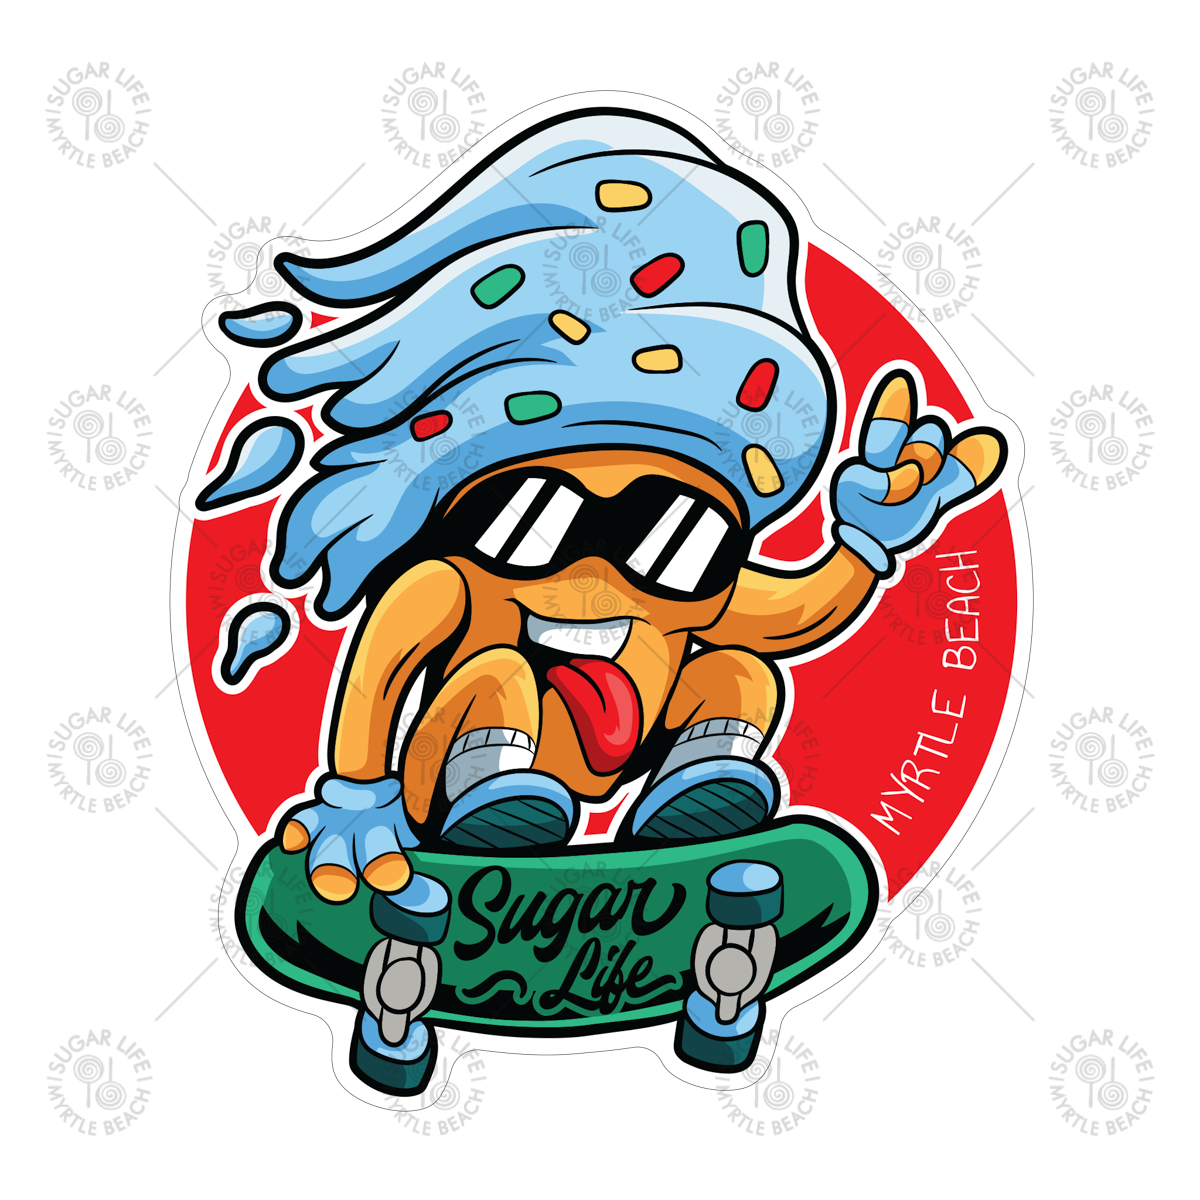 Sugar Life Ice Cream Skateboard